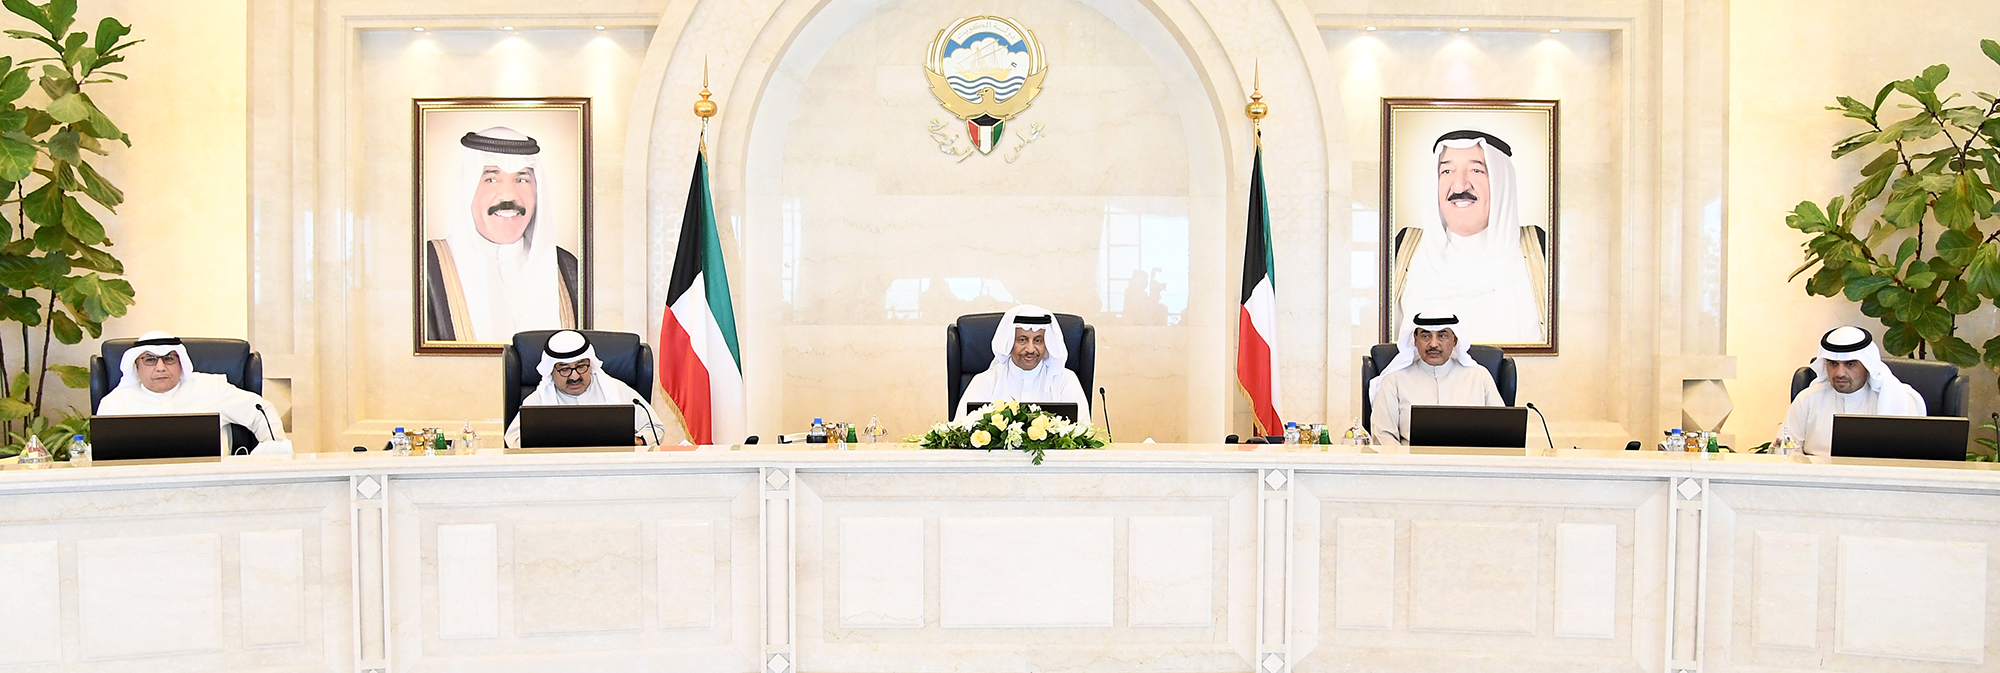 سمو الشيخ جابر المبارك الحمد الصباح رئيس مجلس الوزراء يترأس الاجتماع